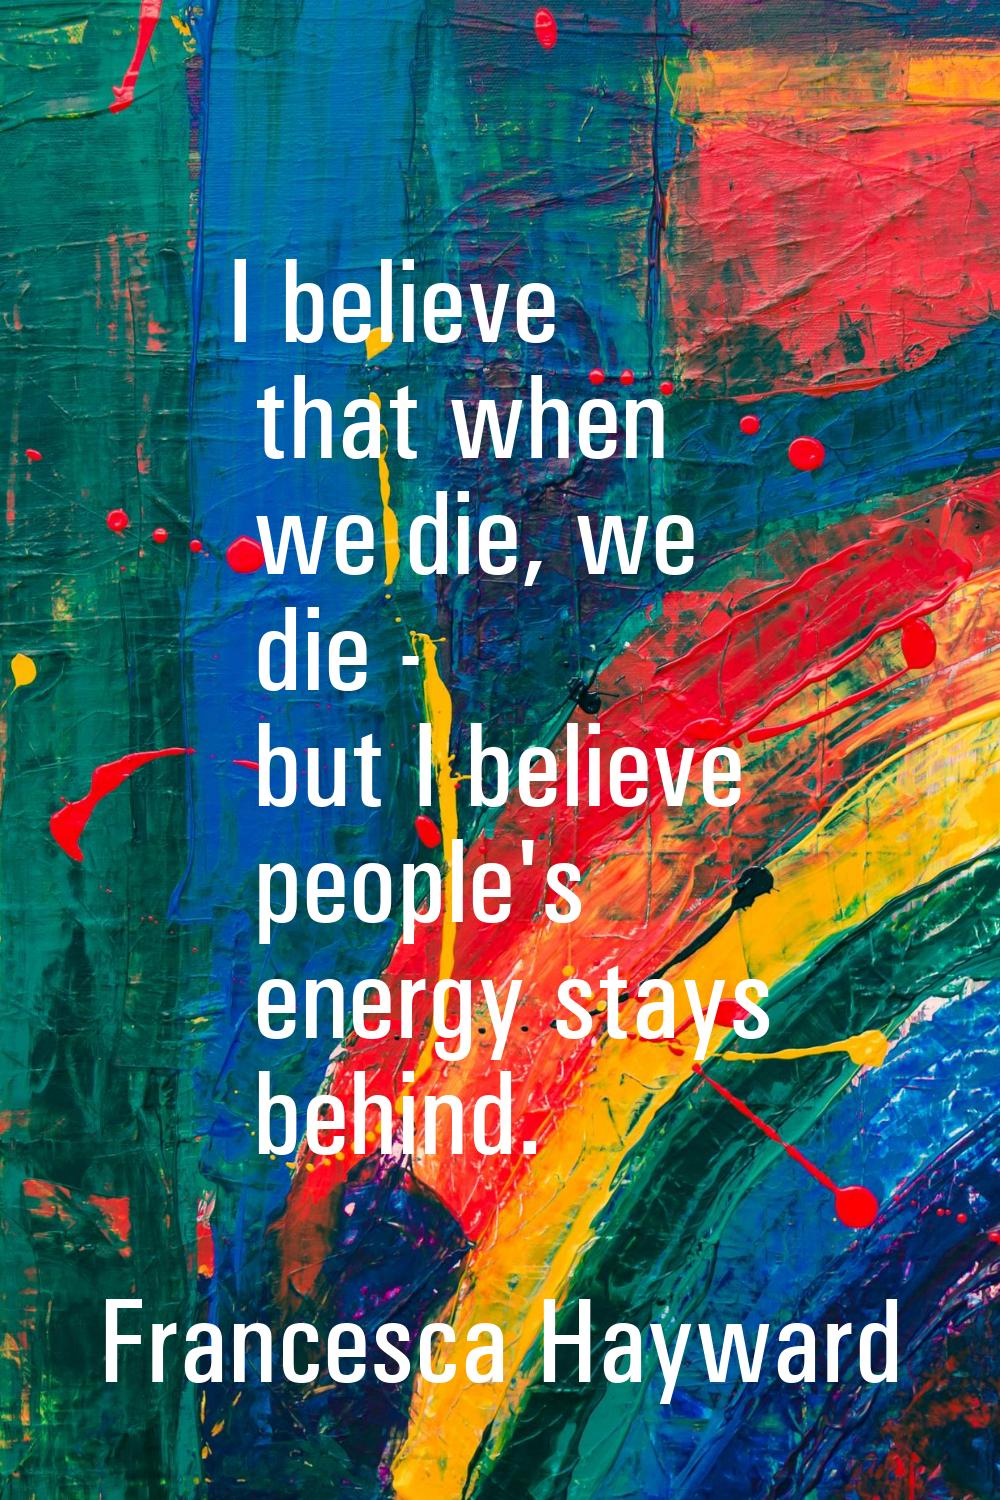 I believe that when we die, we die - but I believe people's energy stays behind.